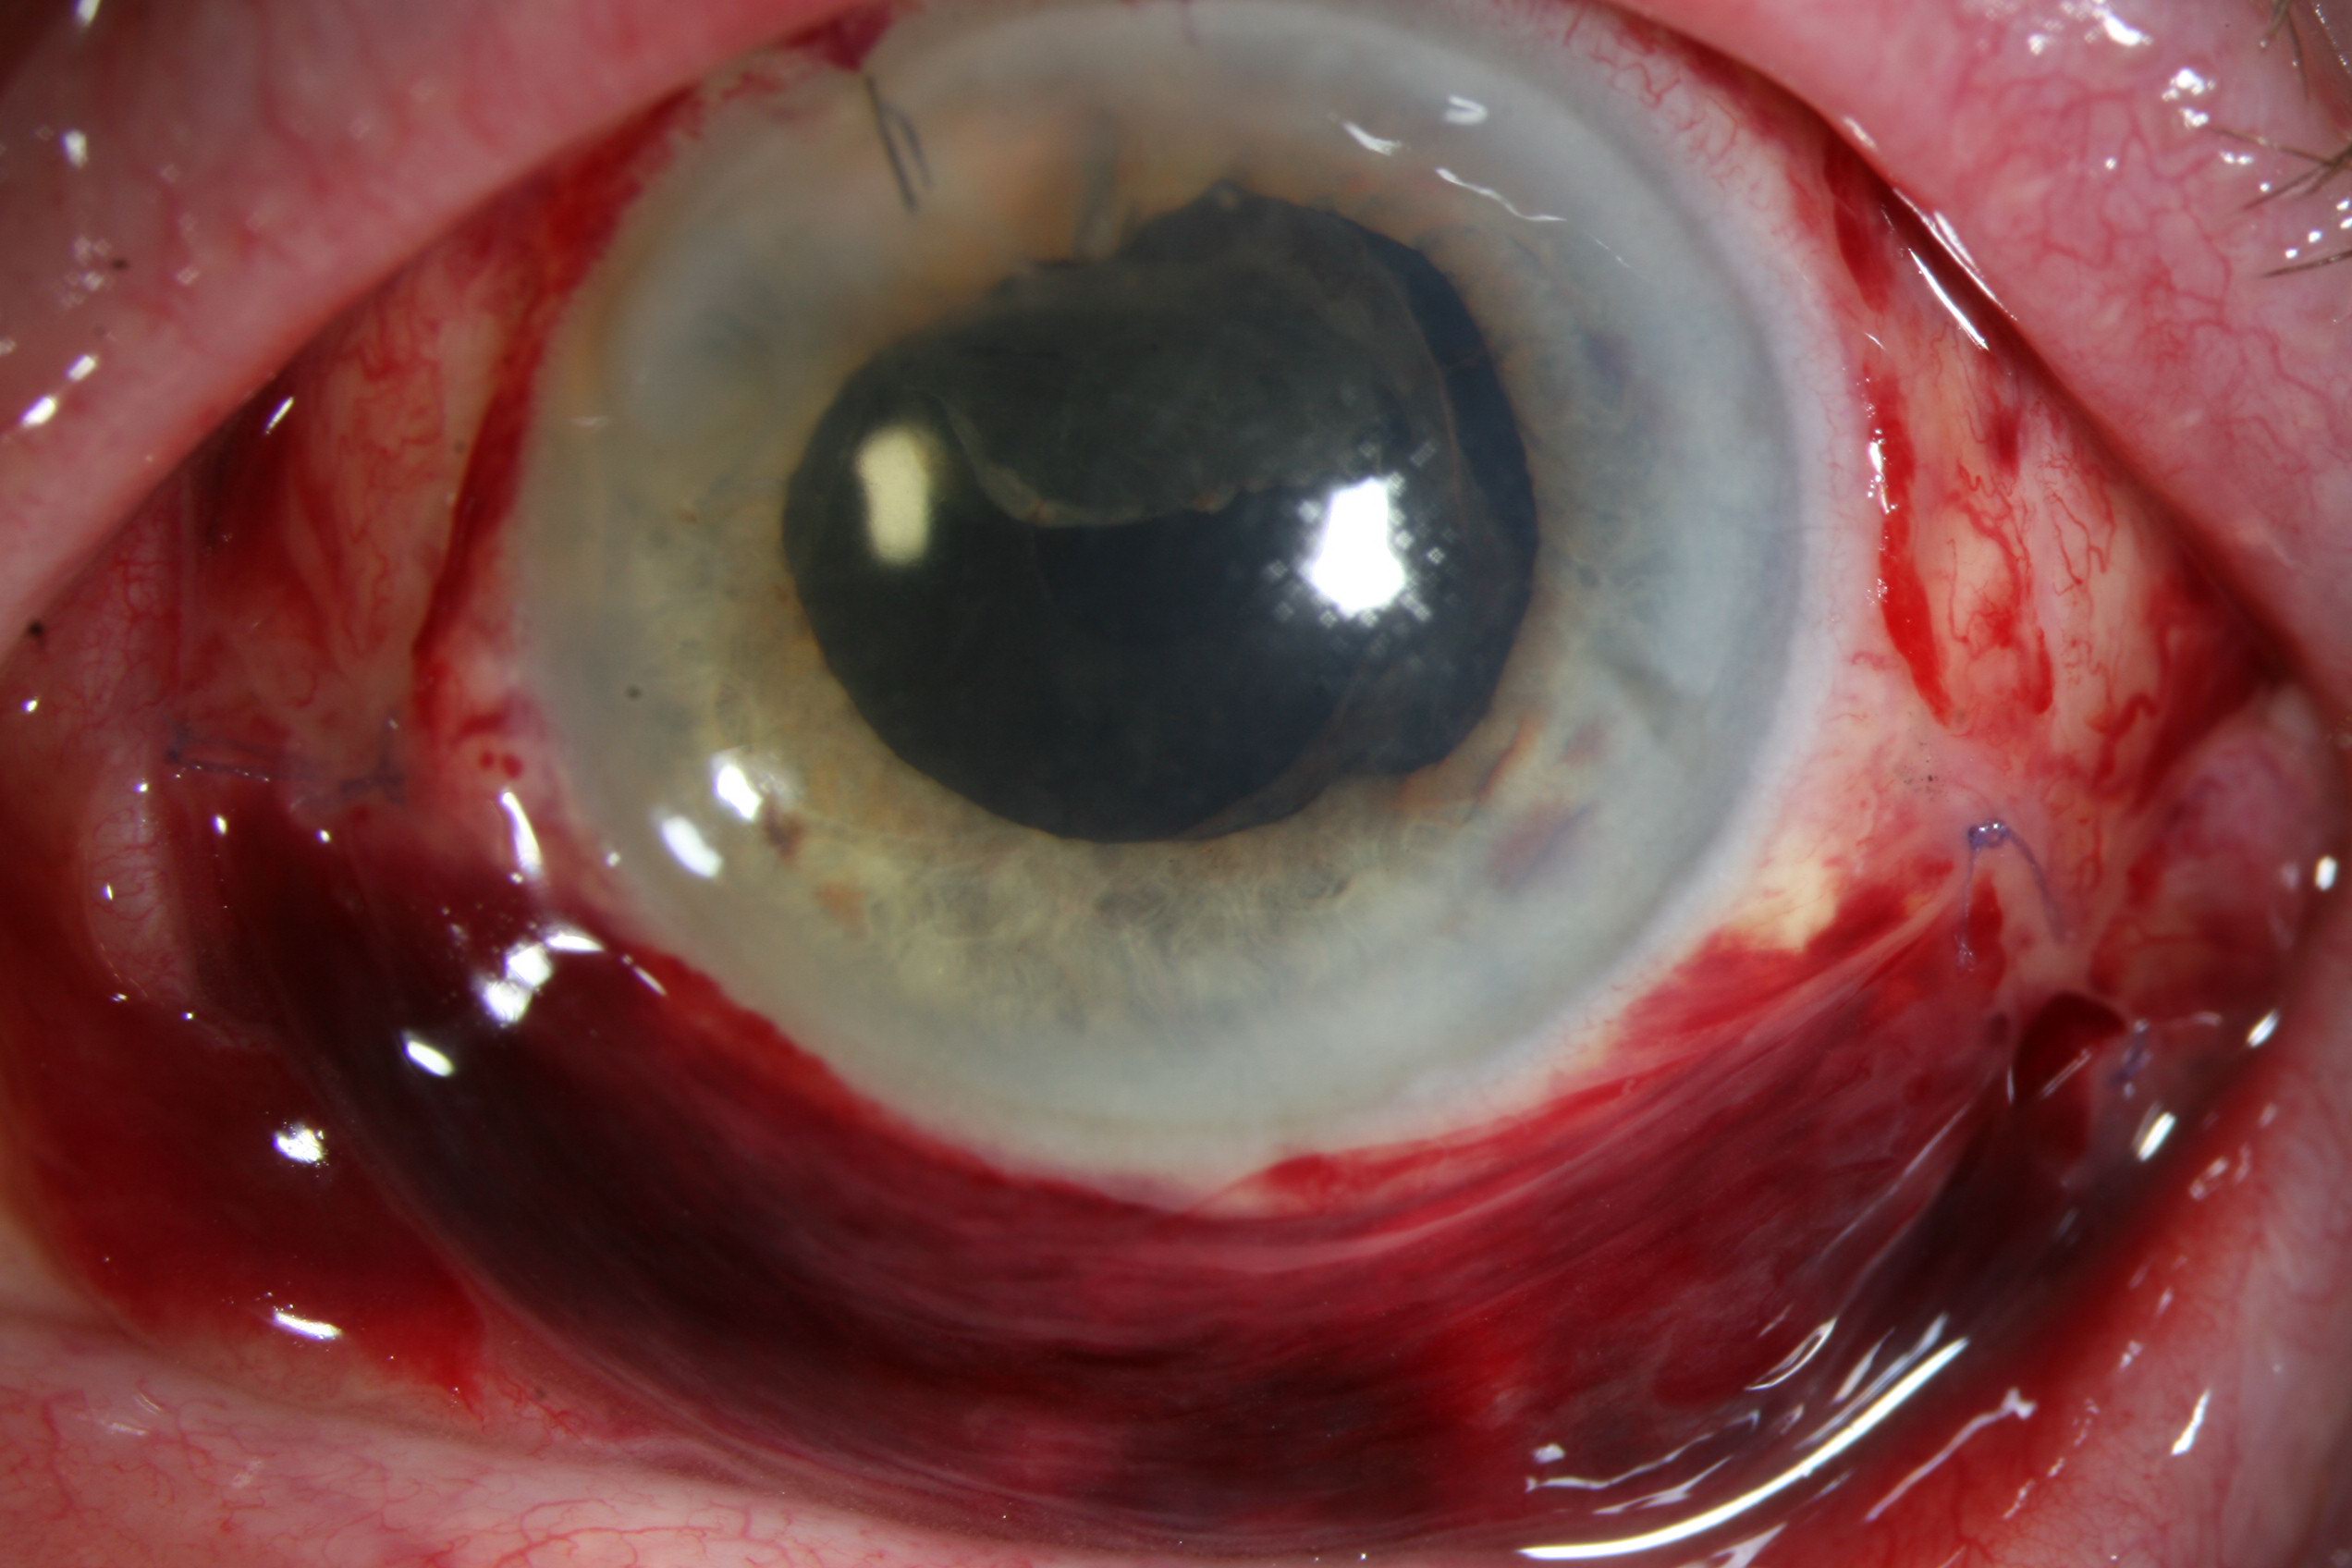 Hémorragie sous conjonctivale secondaire à une opération oculaire